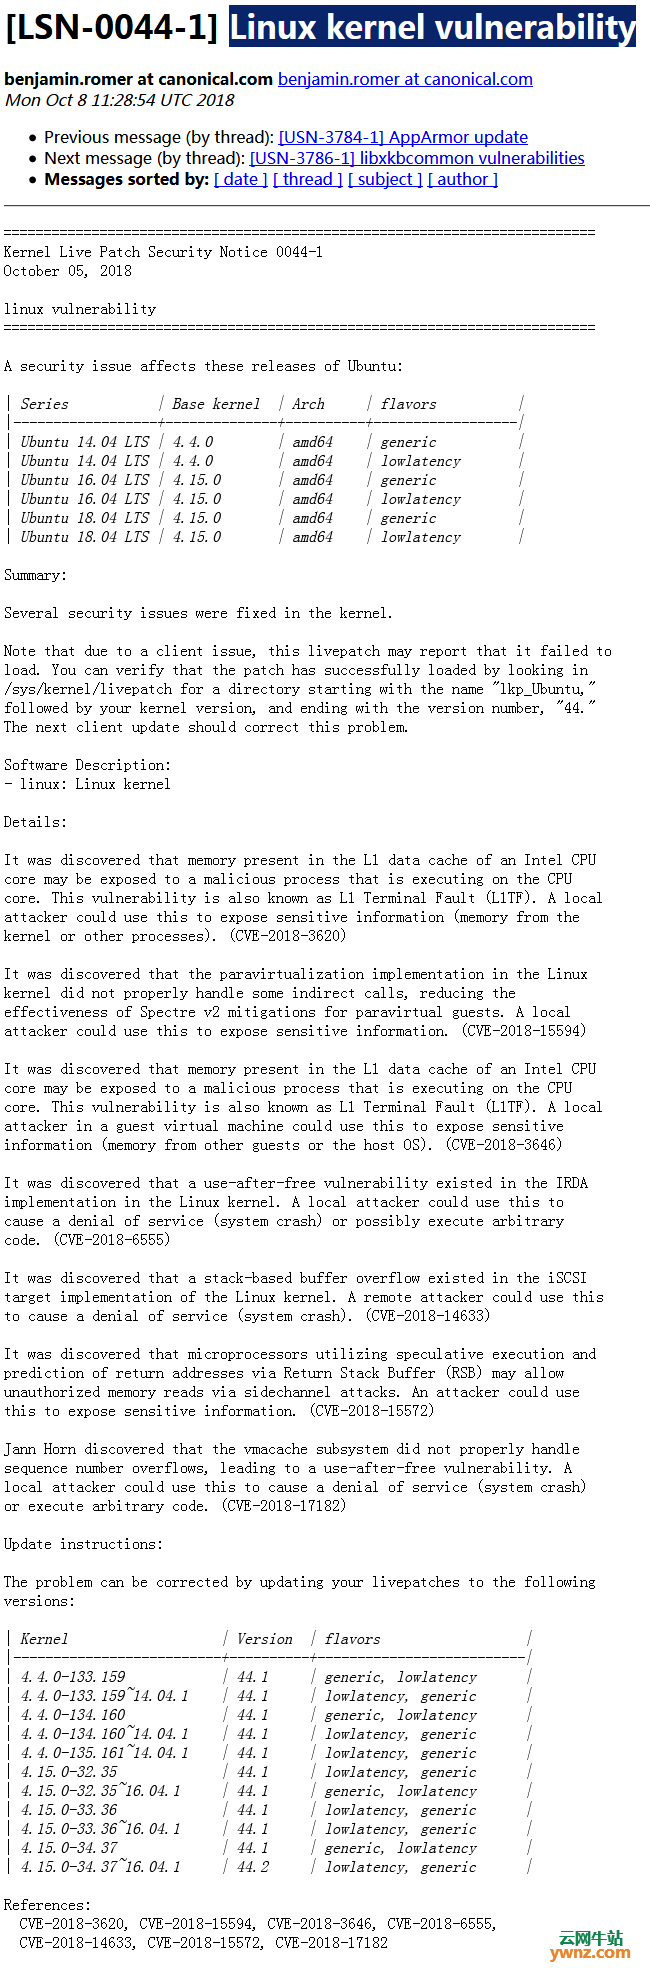 Ubuntu新内核补丁能修复SpectreRSB、L1TF漏洞